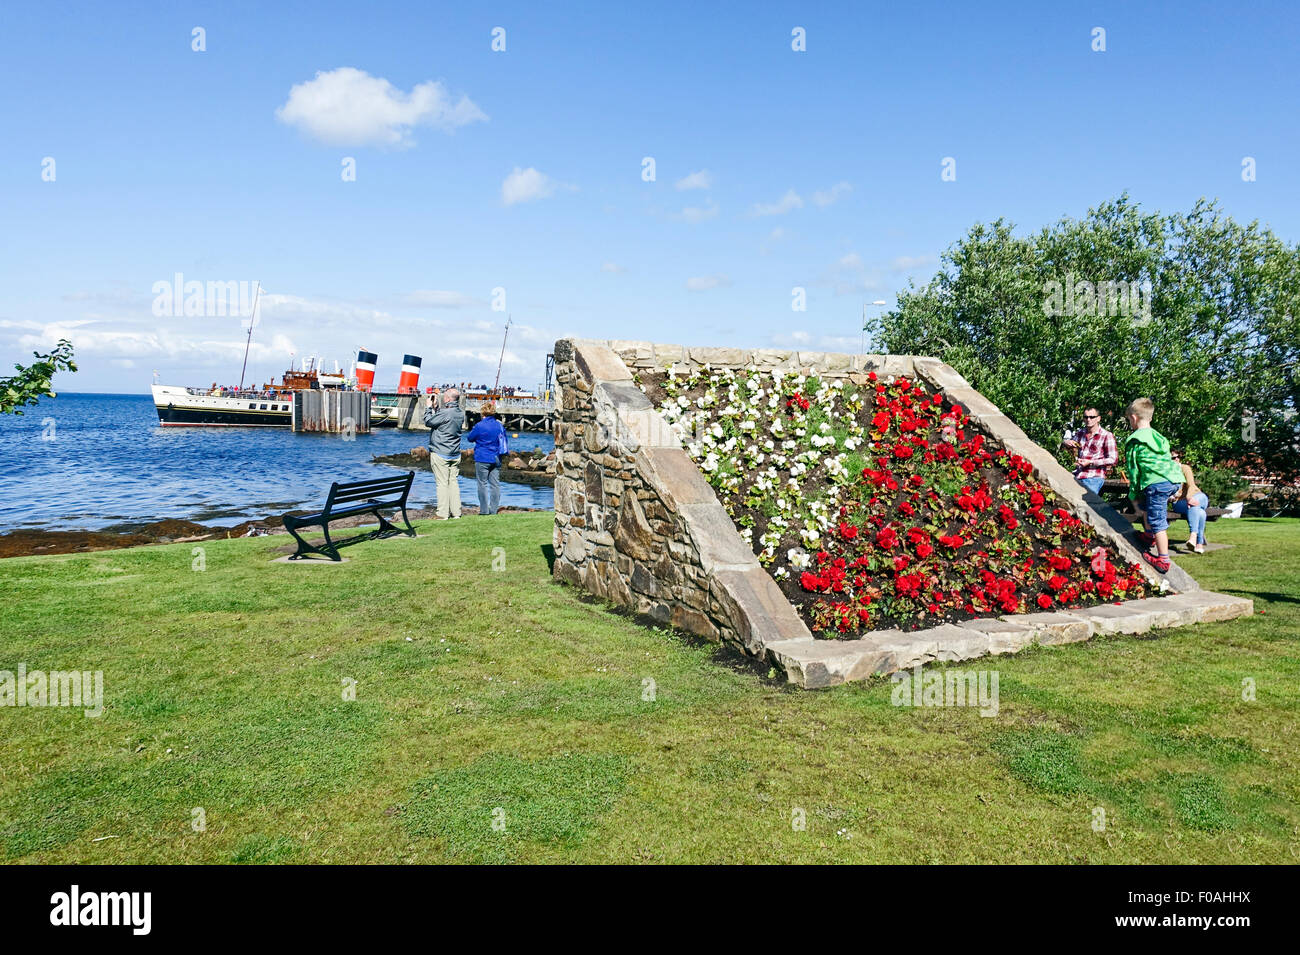 Die Strandpromenade von Brodick in Arran Schottland mit erhöhten Blumenbeet und Paddel-Dampfer Waverley am Pier. Stockfoto